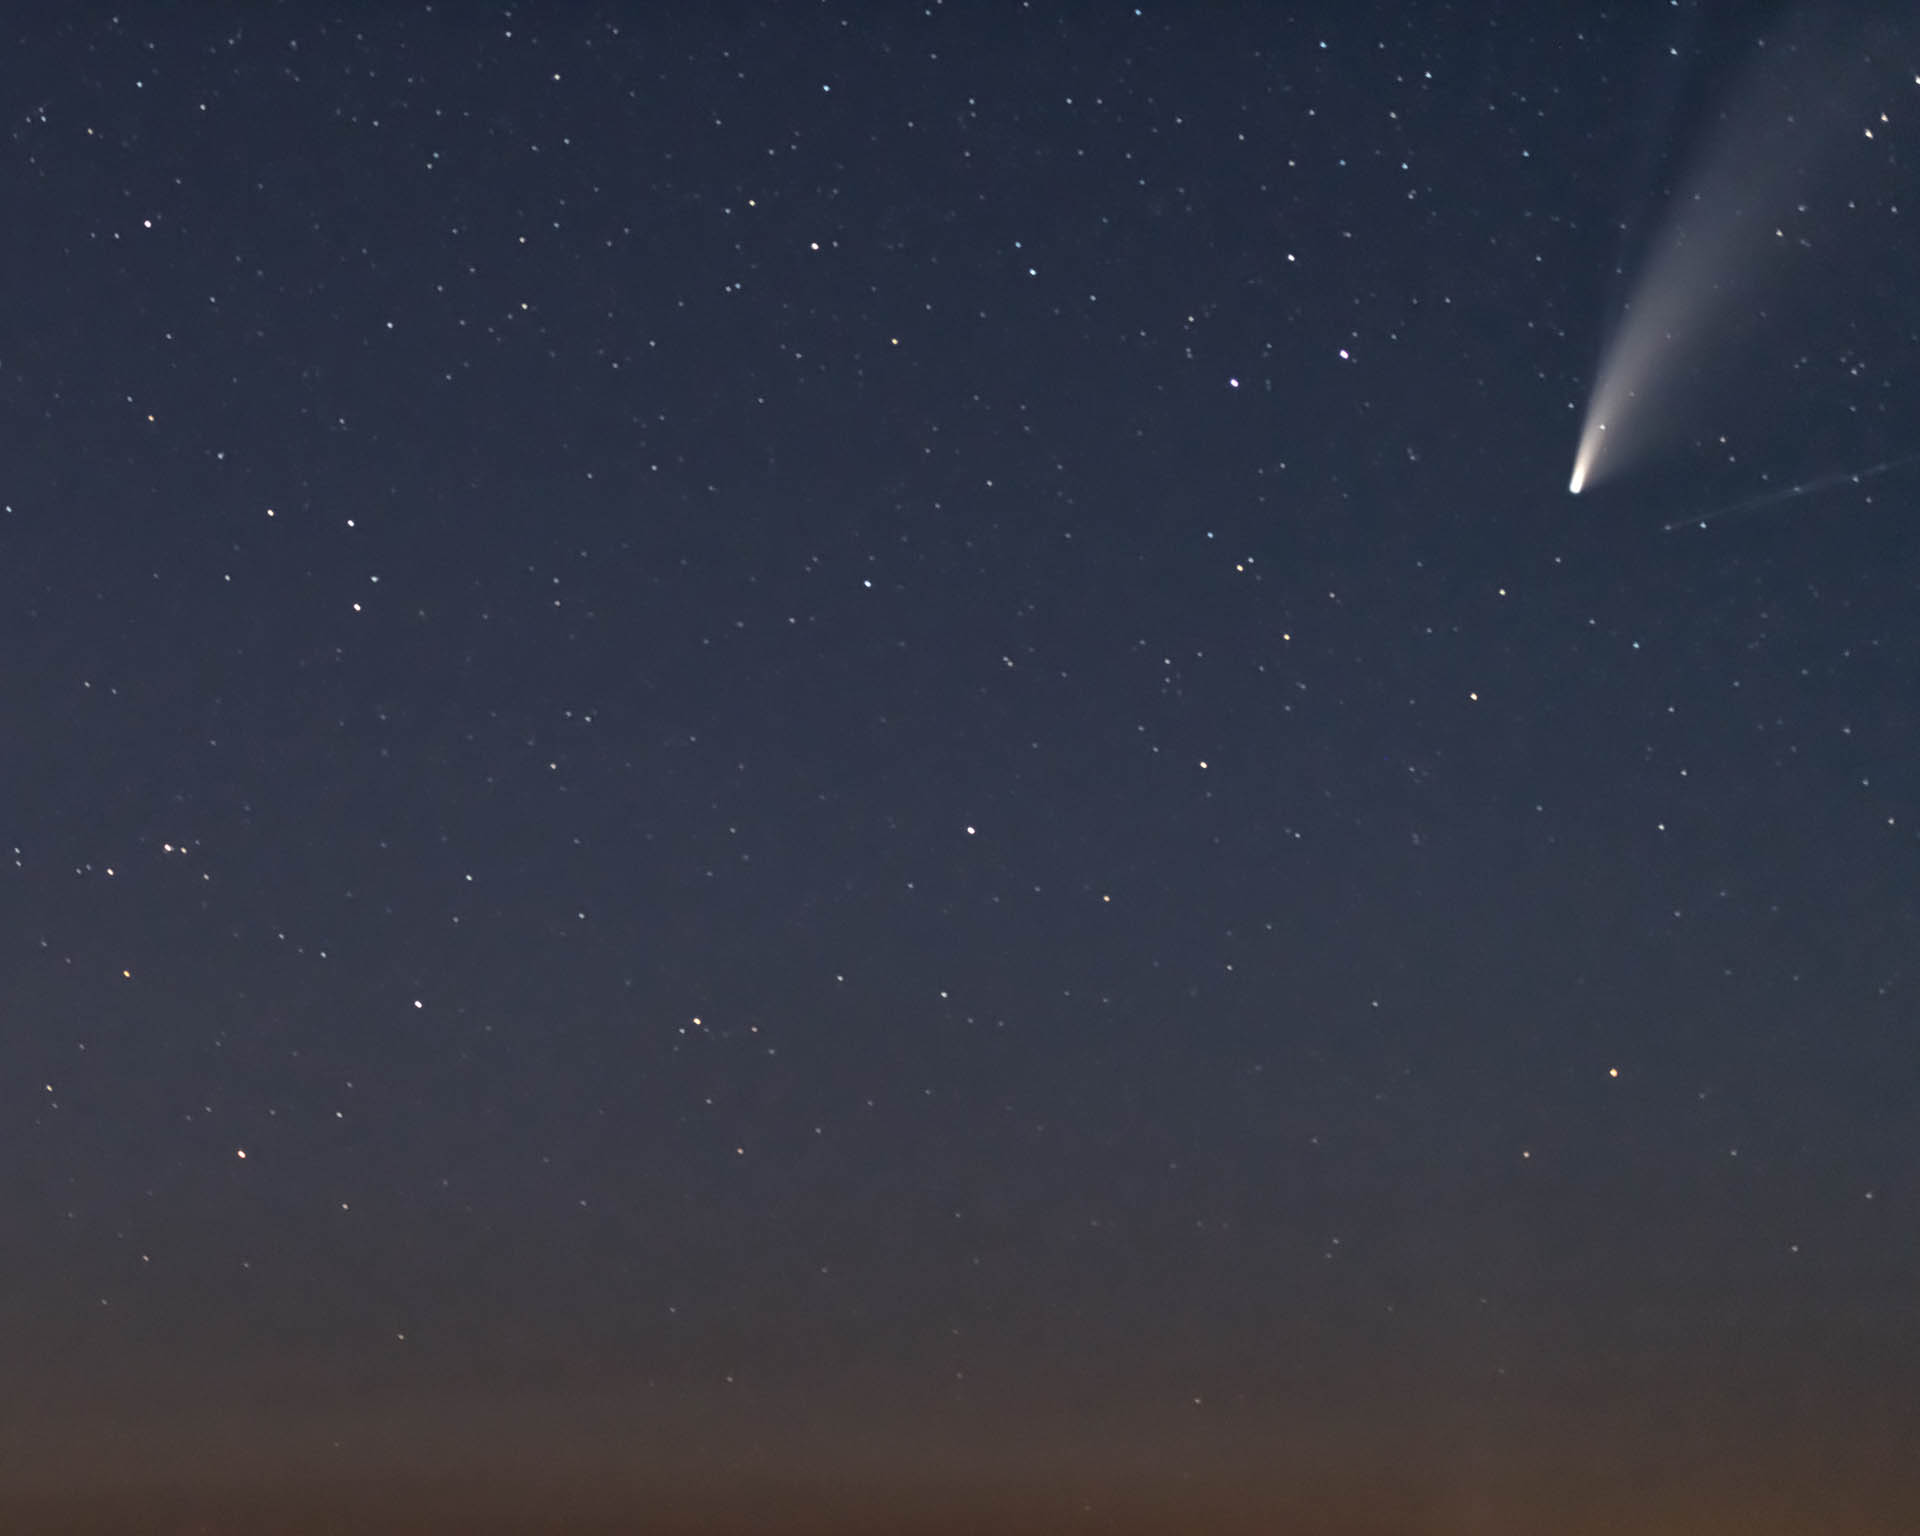 Neowise Comet over Buckhorn Lake